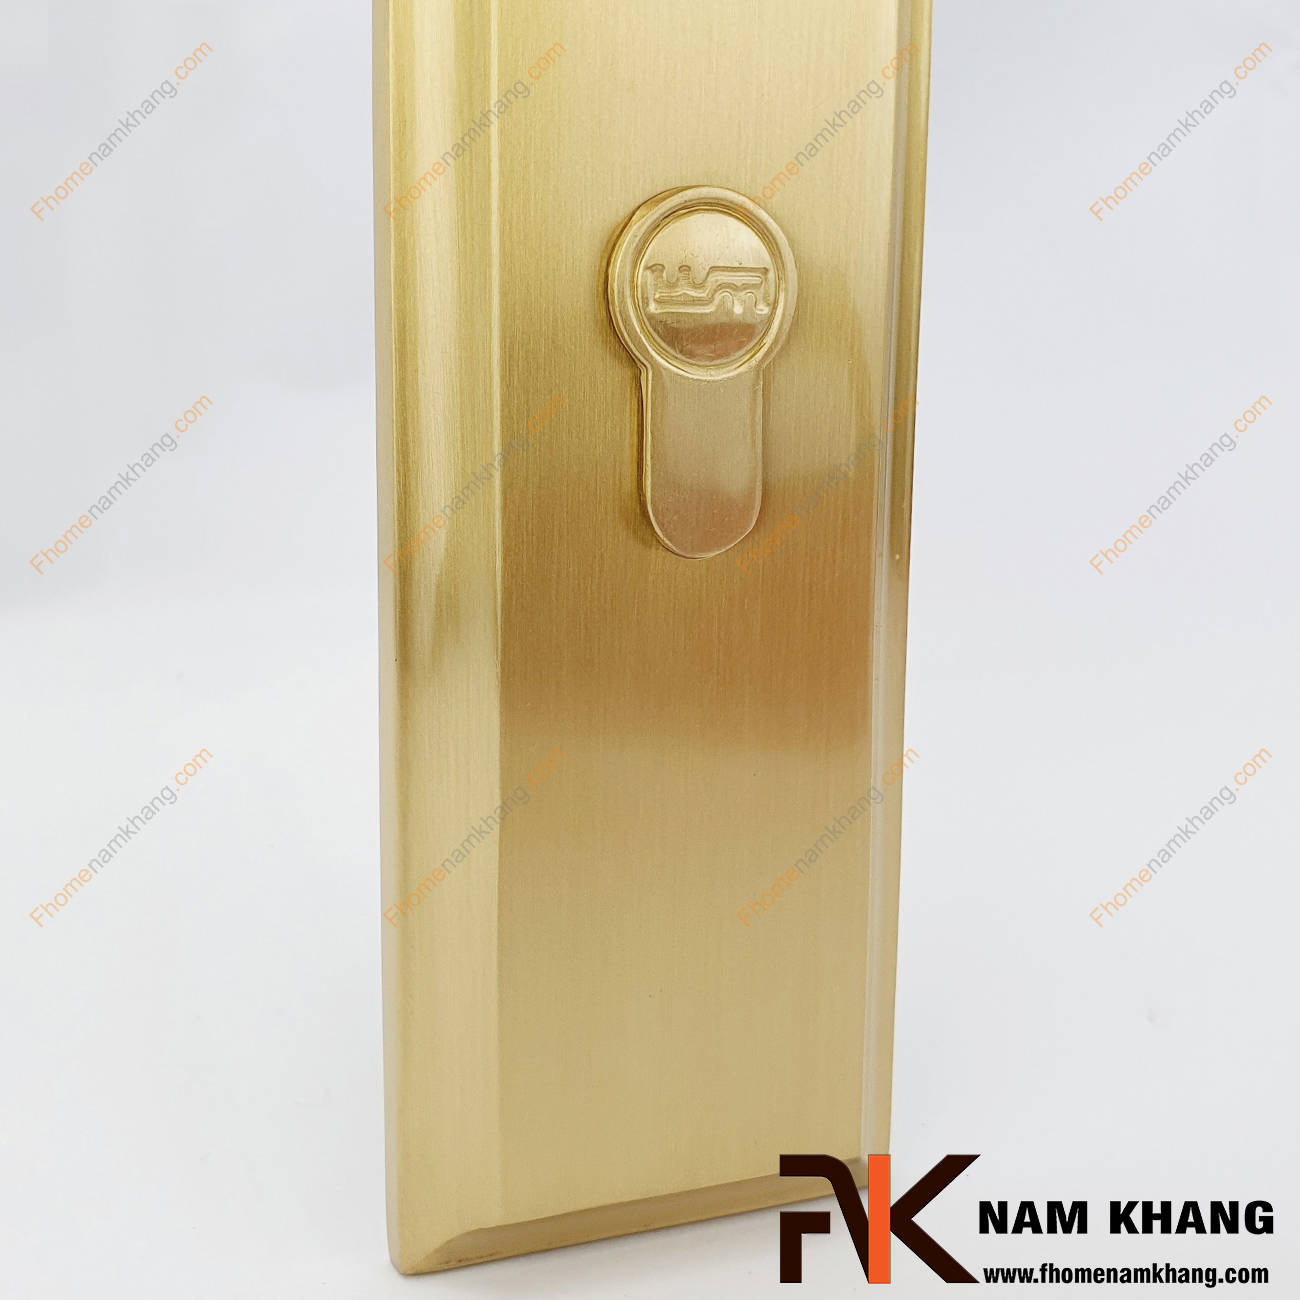 Nắp đậy củ khóa NK261CC-NCDV là phụ kiện được sử dụng để che đi phần lỗ củ khóa trên ốp khóa